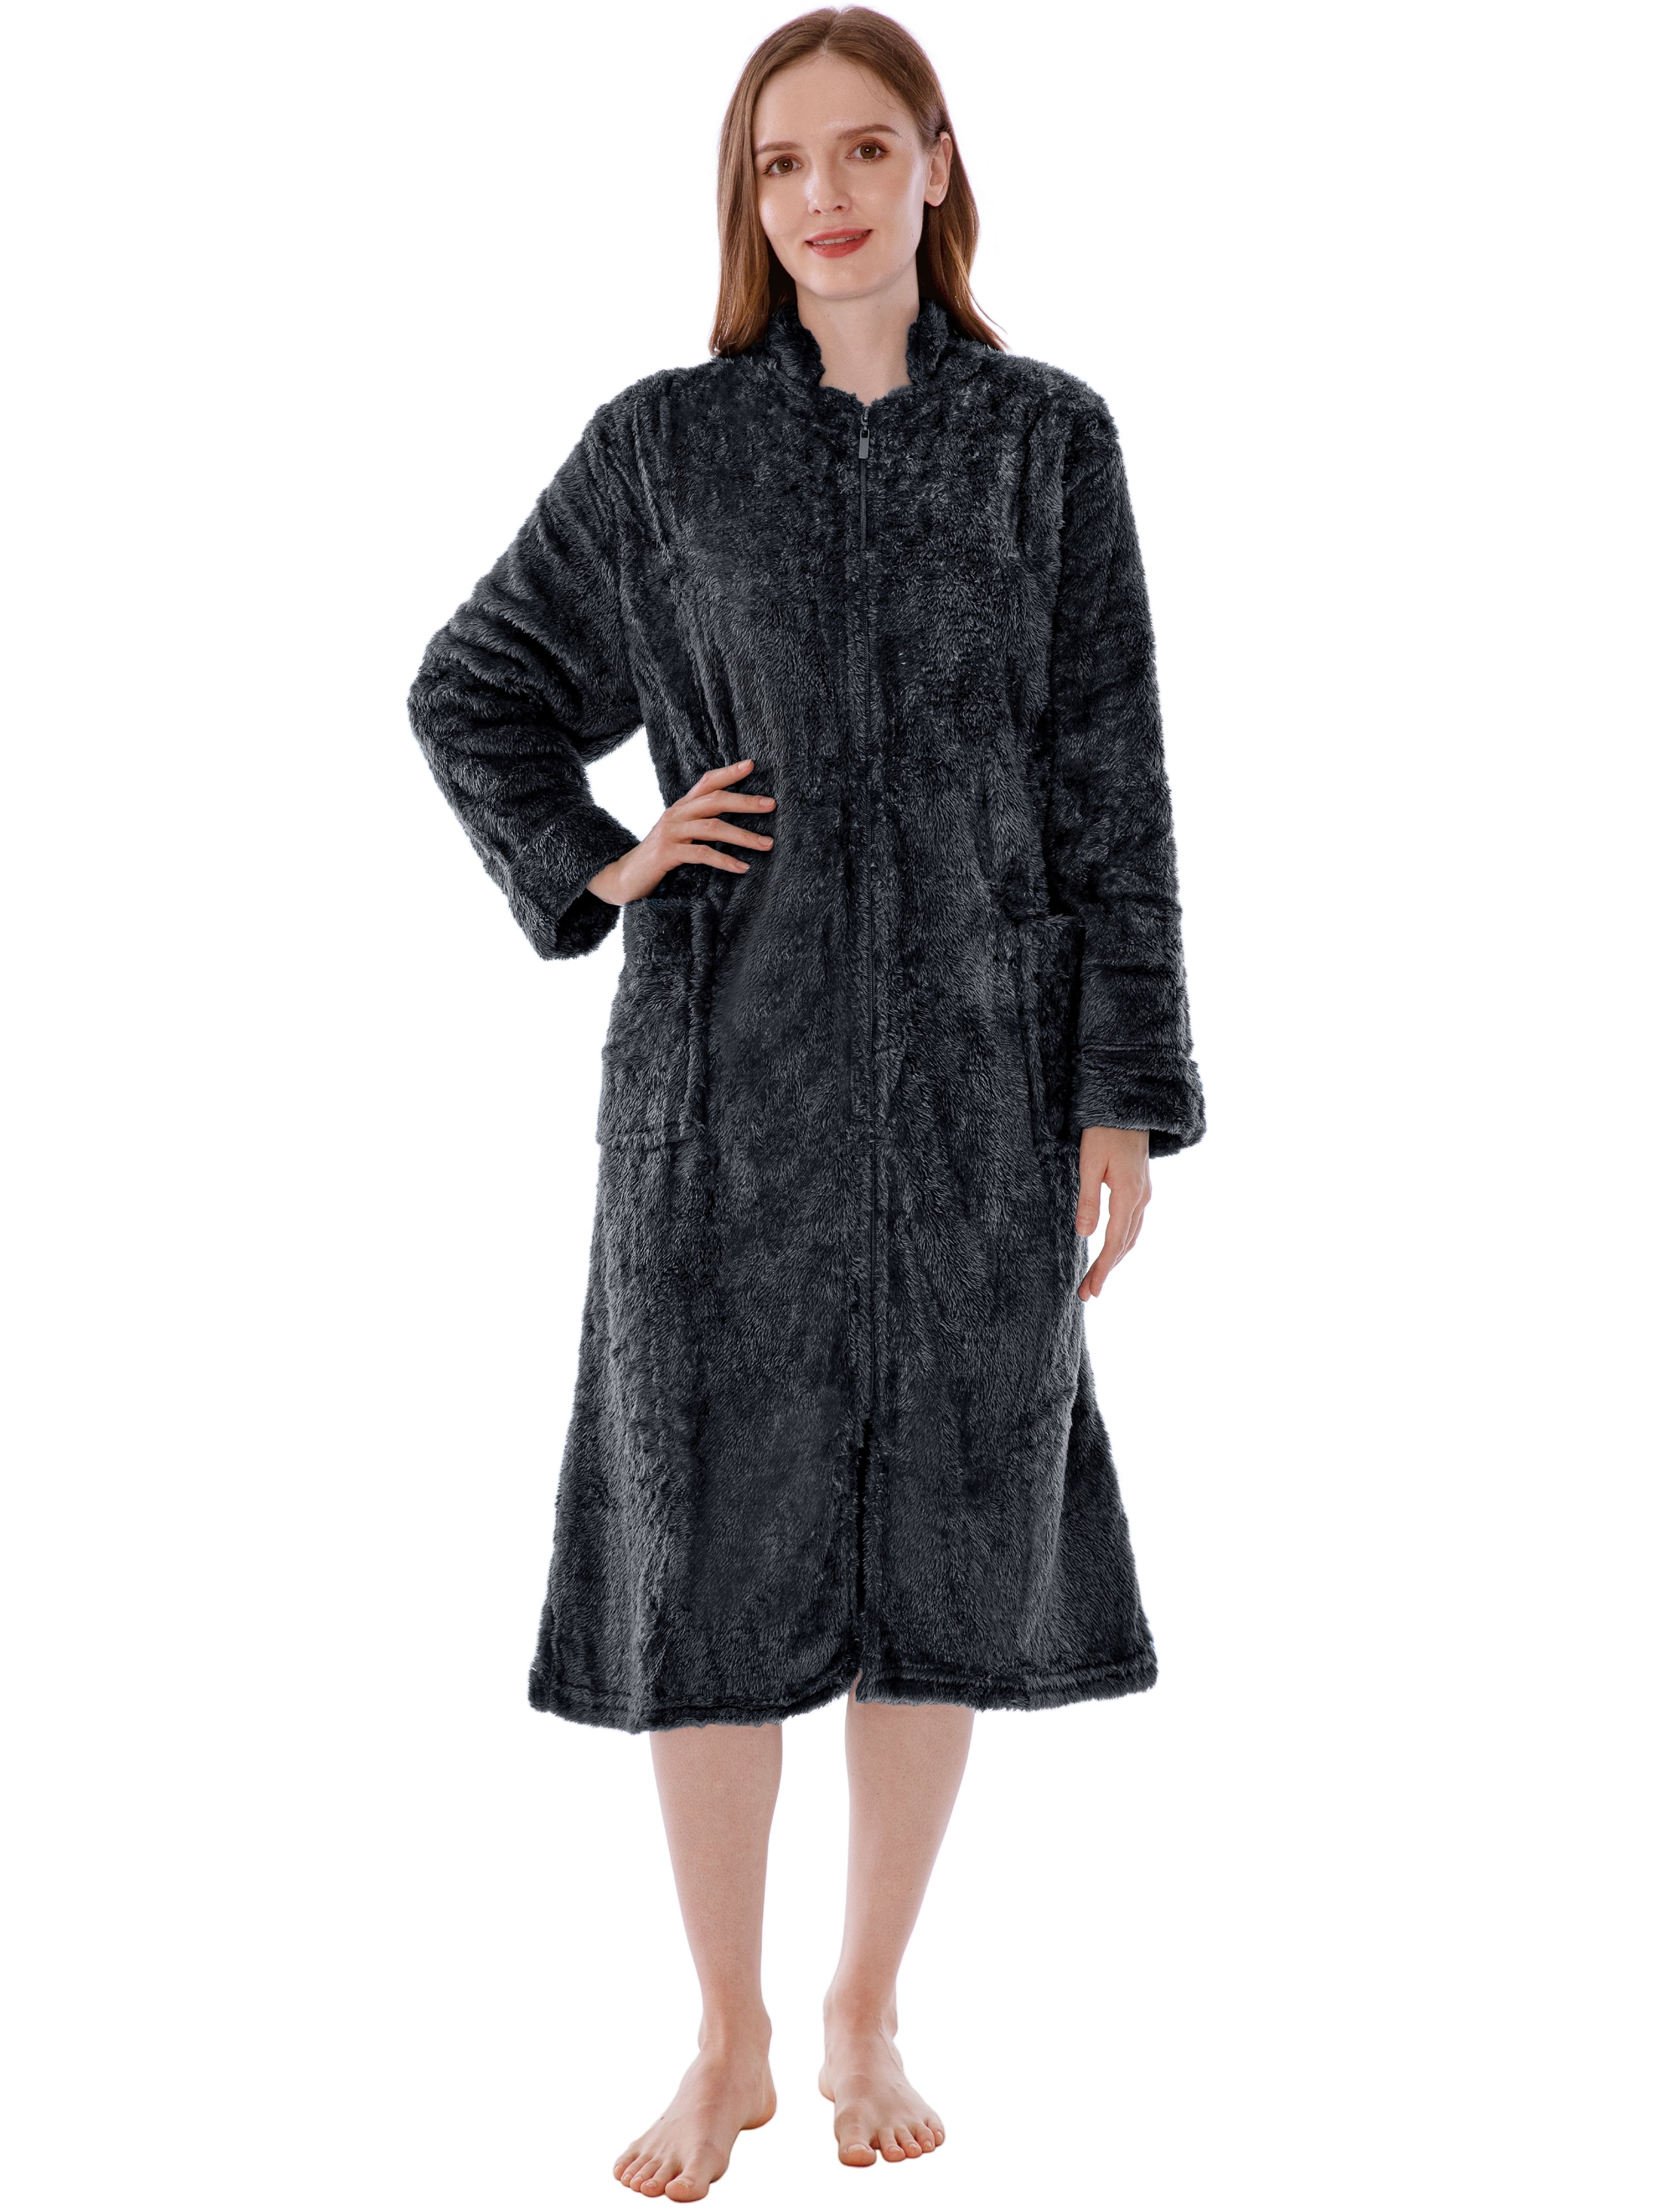 Adult's Fleece Zip Up Dressing Gowns - Donann